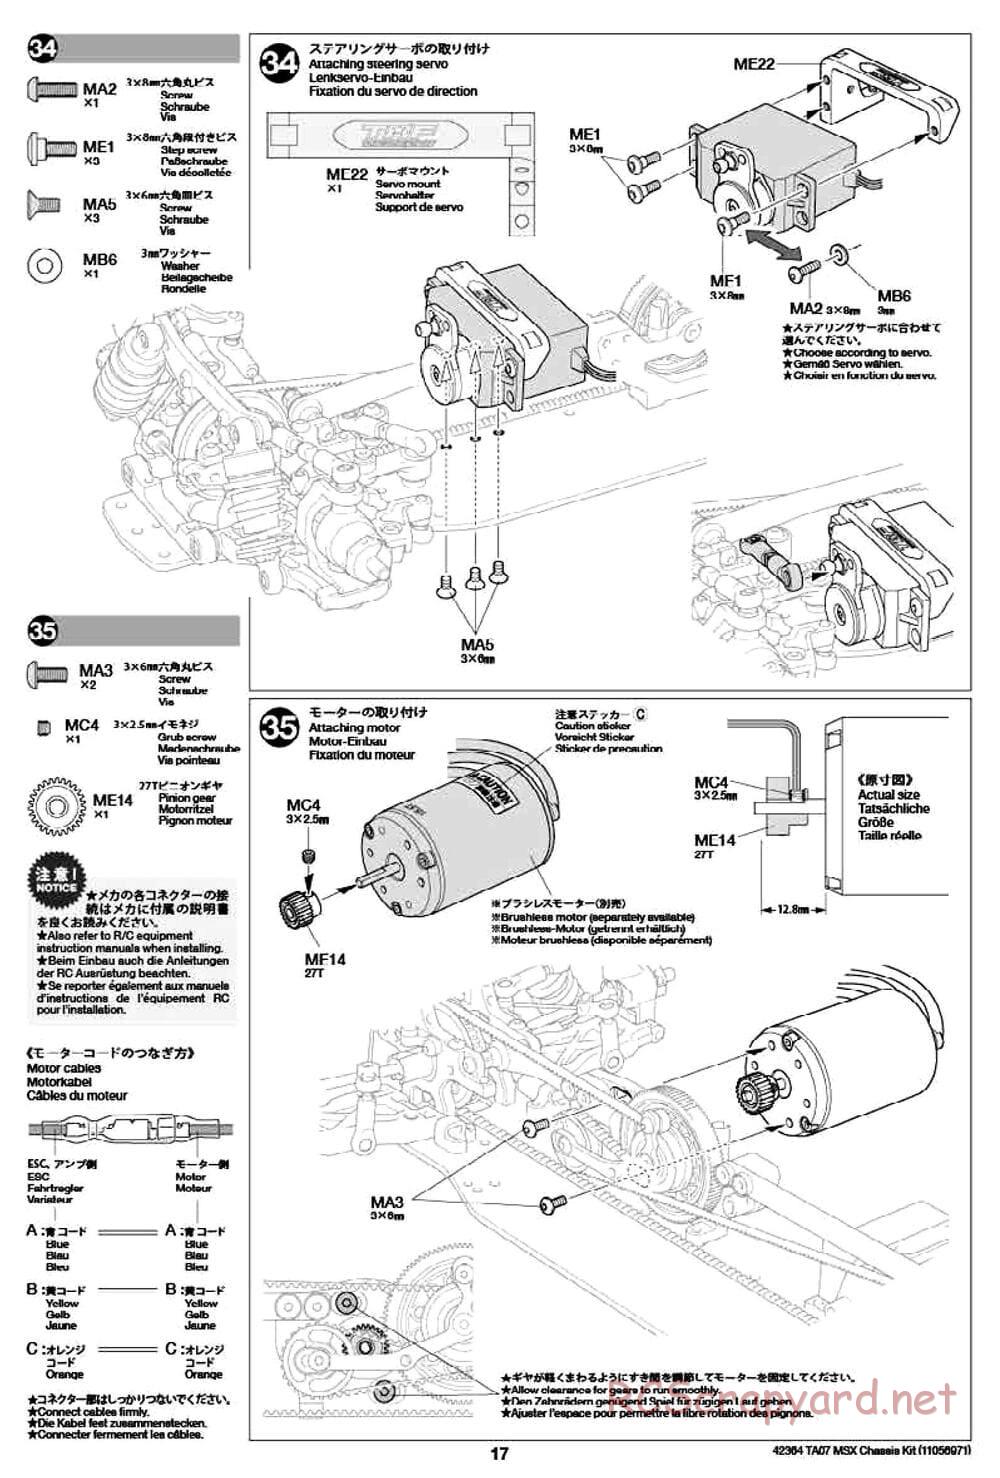 Tamiya - TA07 MSX Chassis - Manual - Page 17